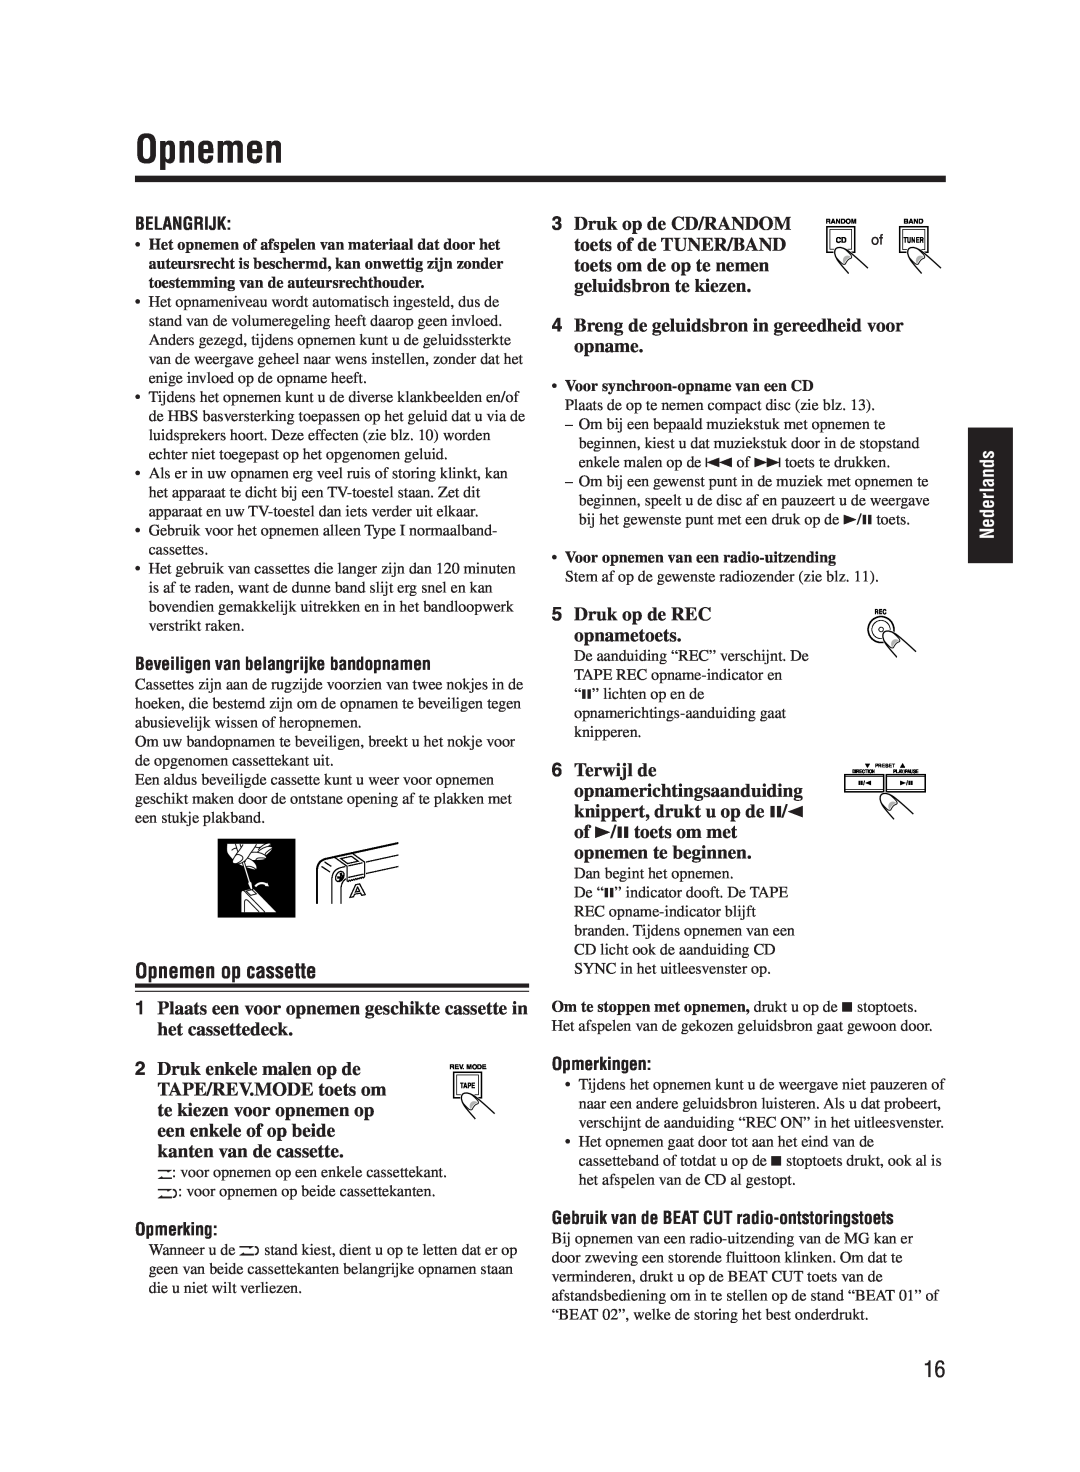 JVC UX-M55 manual Opnemen op cassette, Nederlands 